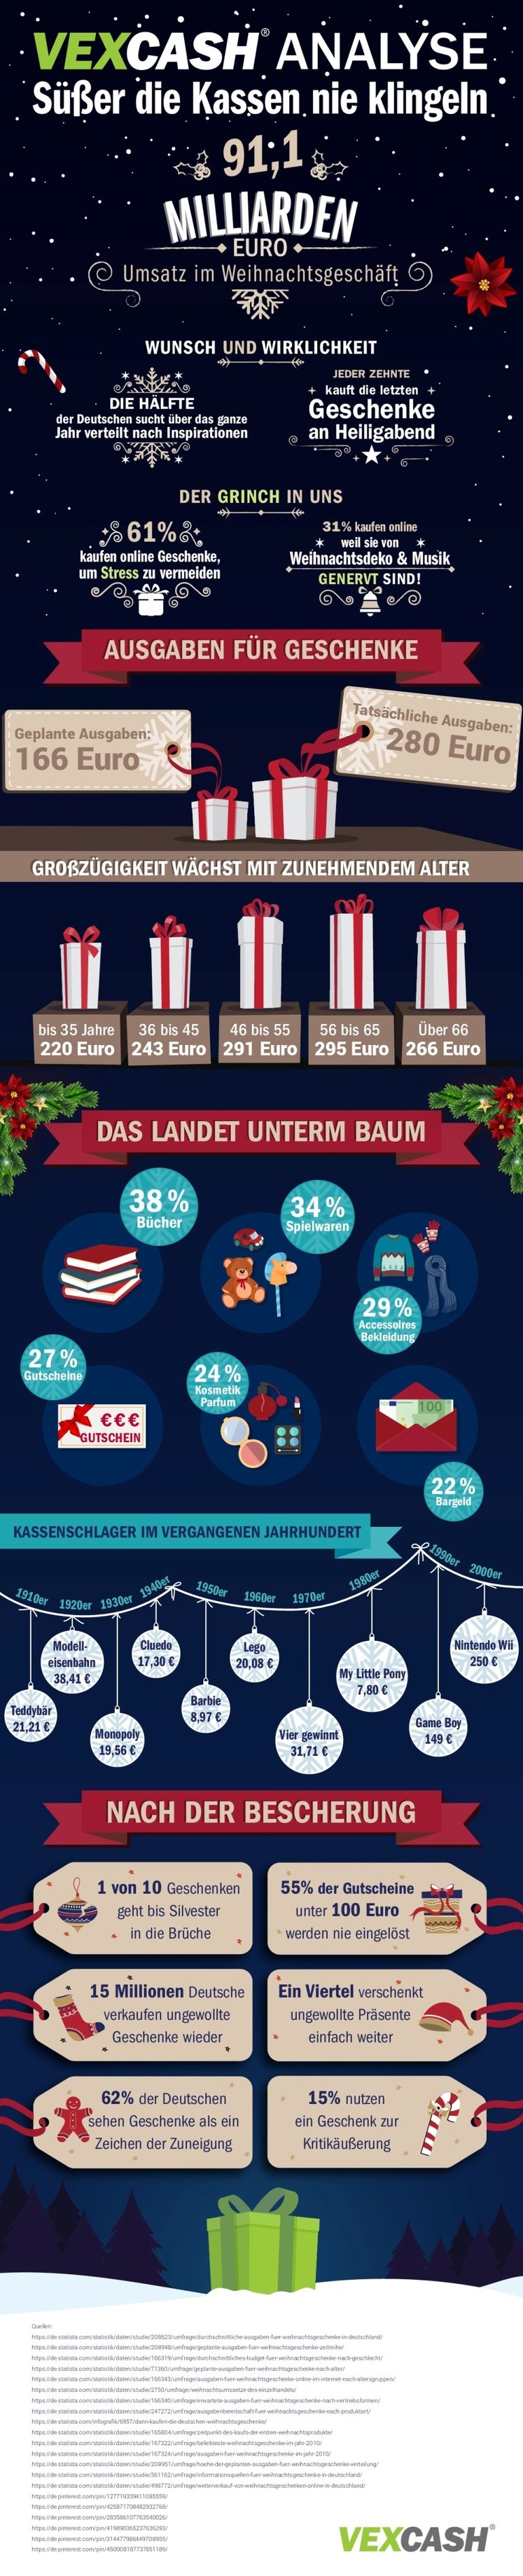 Kaufverhalten der Deutschen für Geschenke steigt weiter